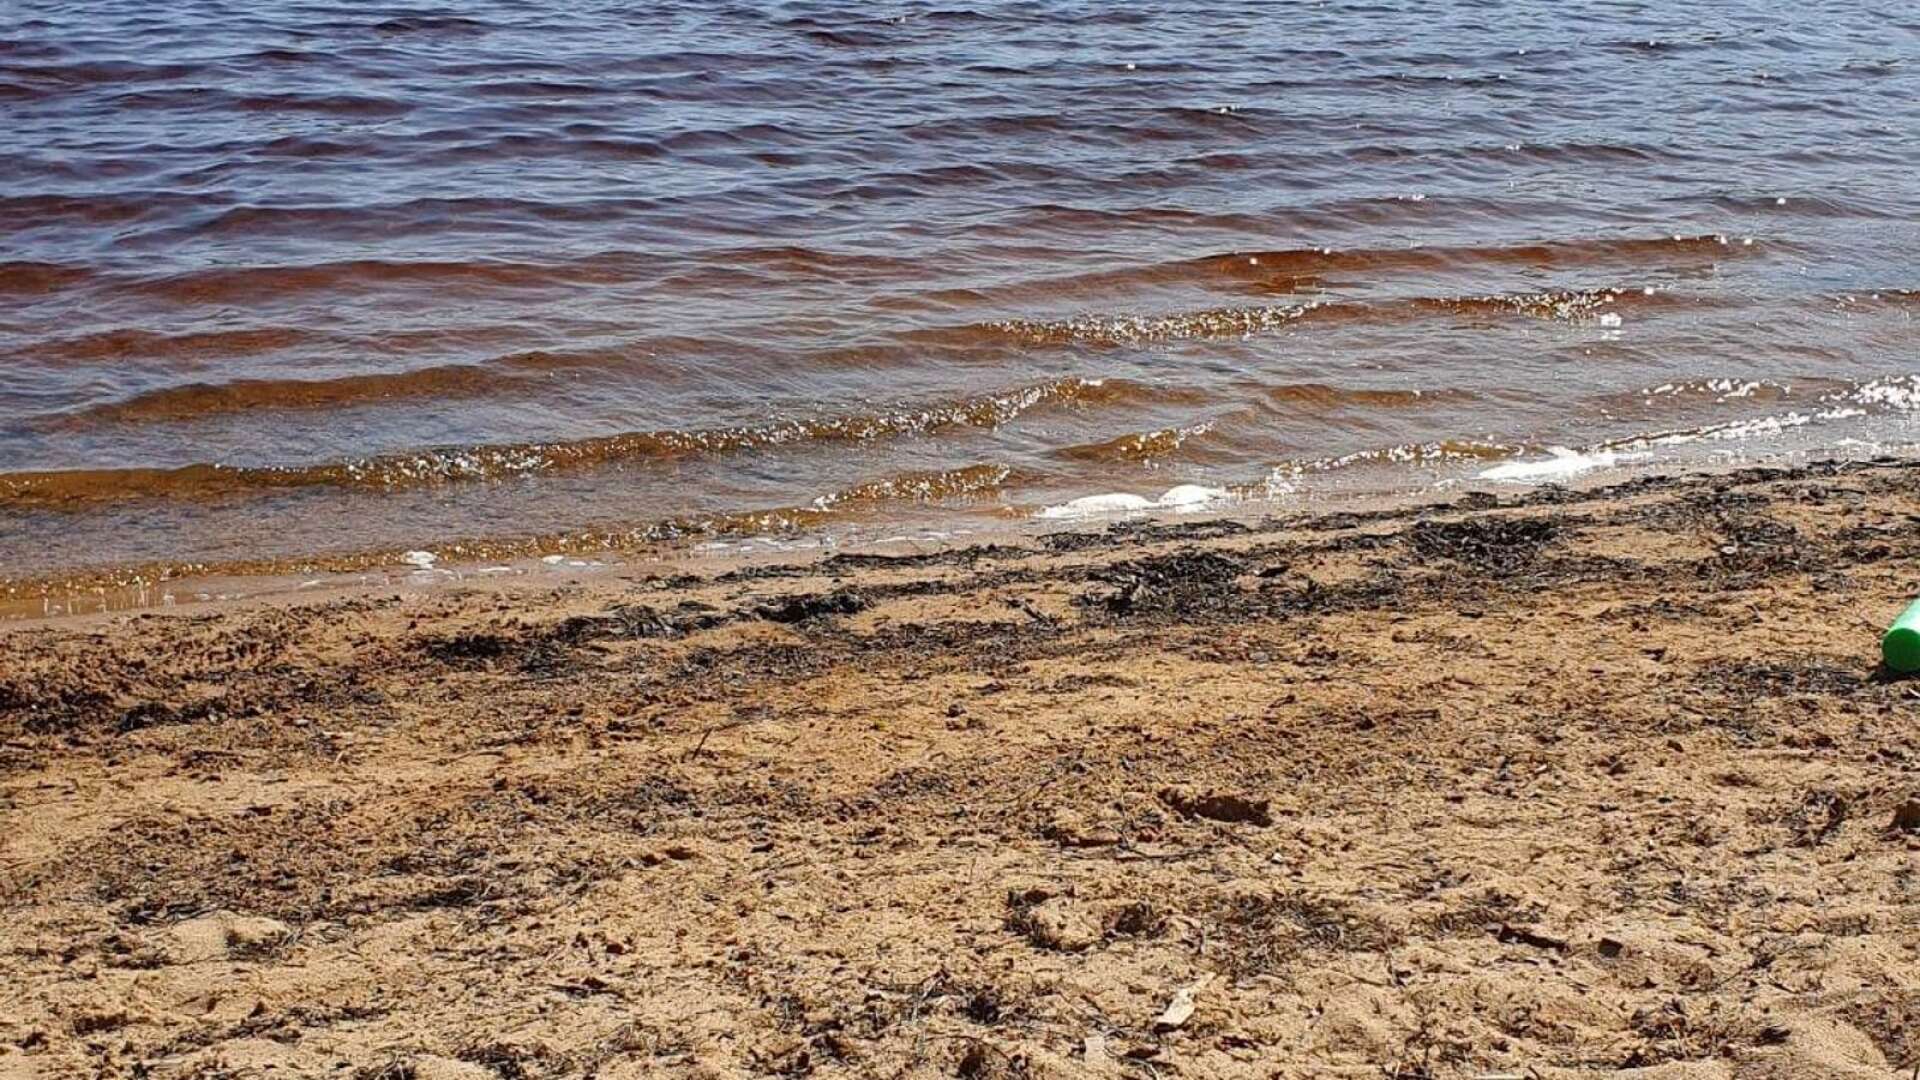 Badstranden i Sandsjön är ett exempel på en sommarpärla i Filipstads kommun som är värd att upptäcka.